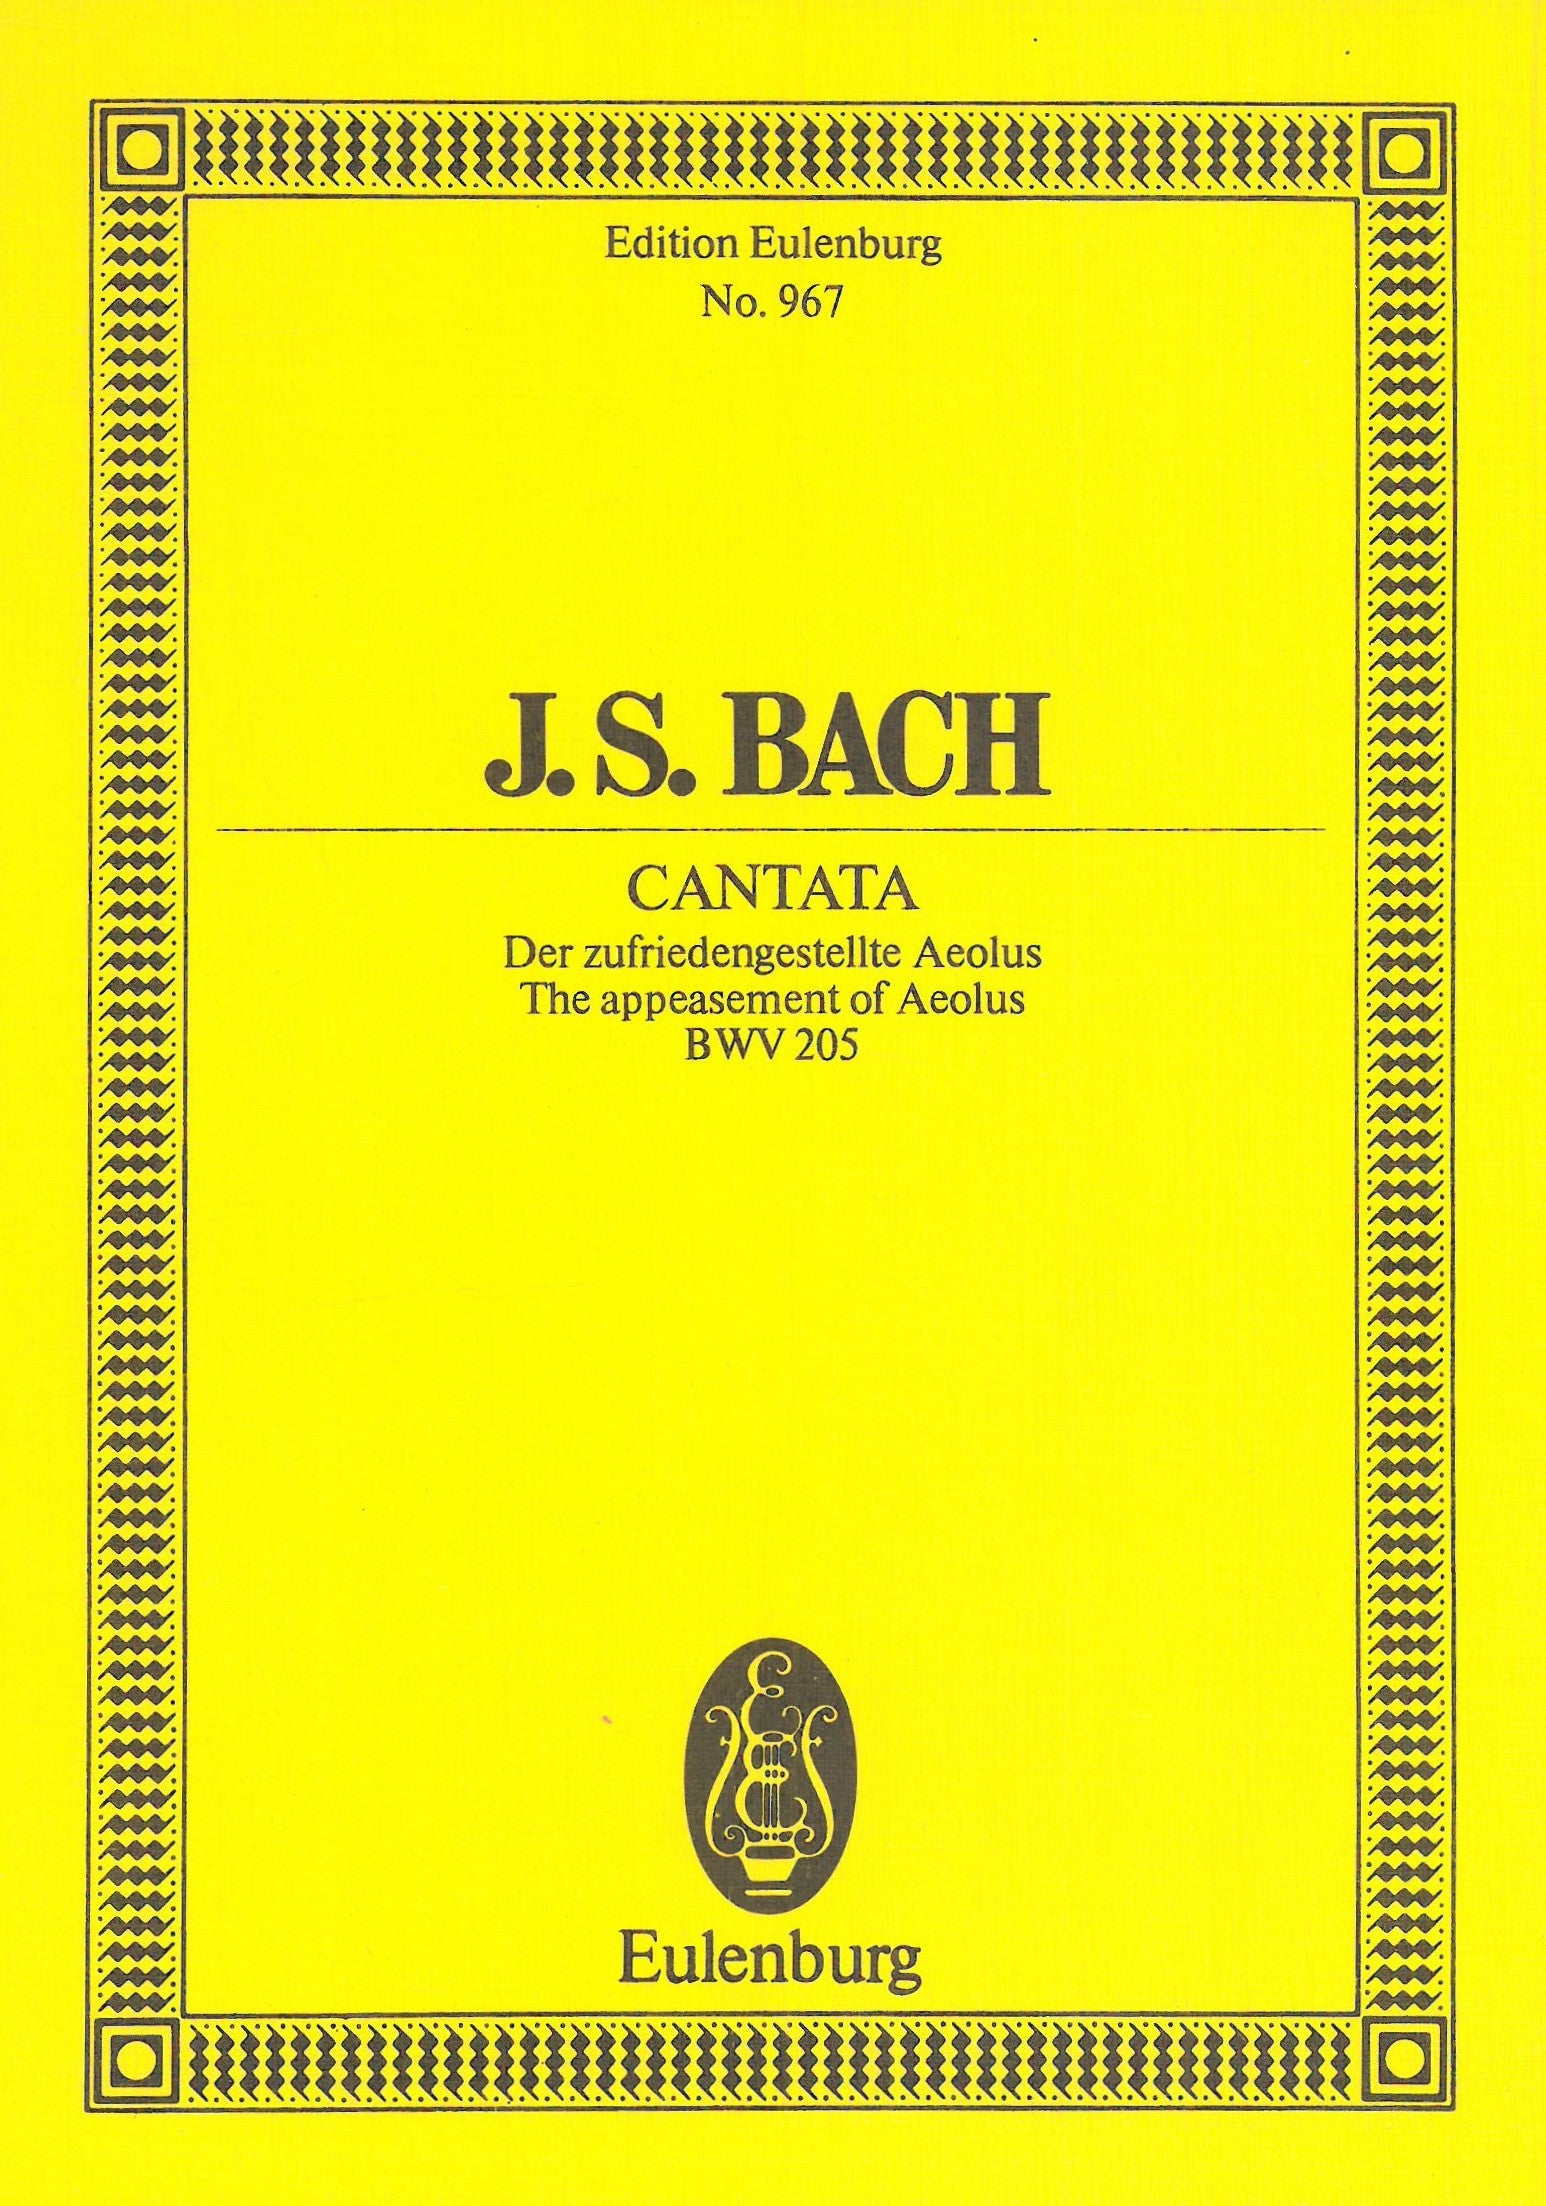 Bach: Zerreisset, zersprenget, zertrümmert die Gruft, BWV 205